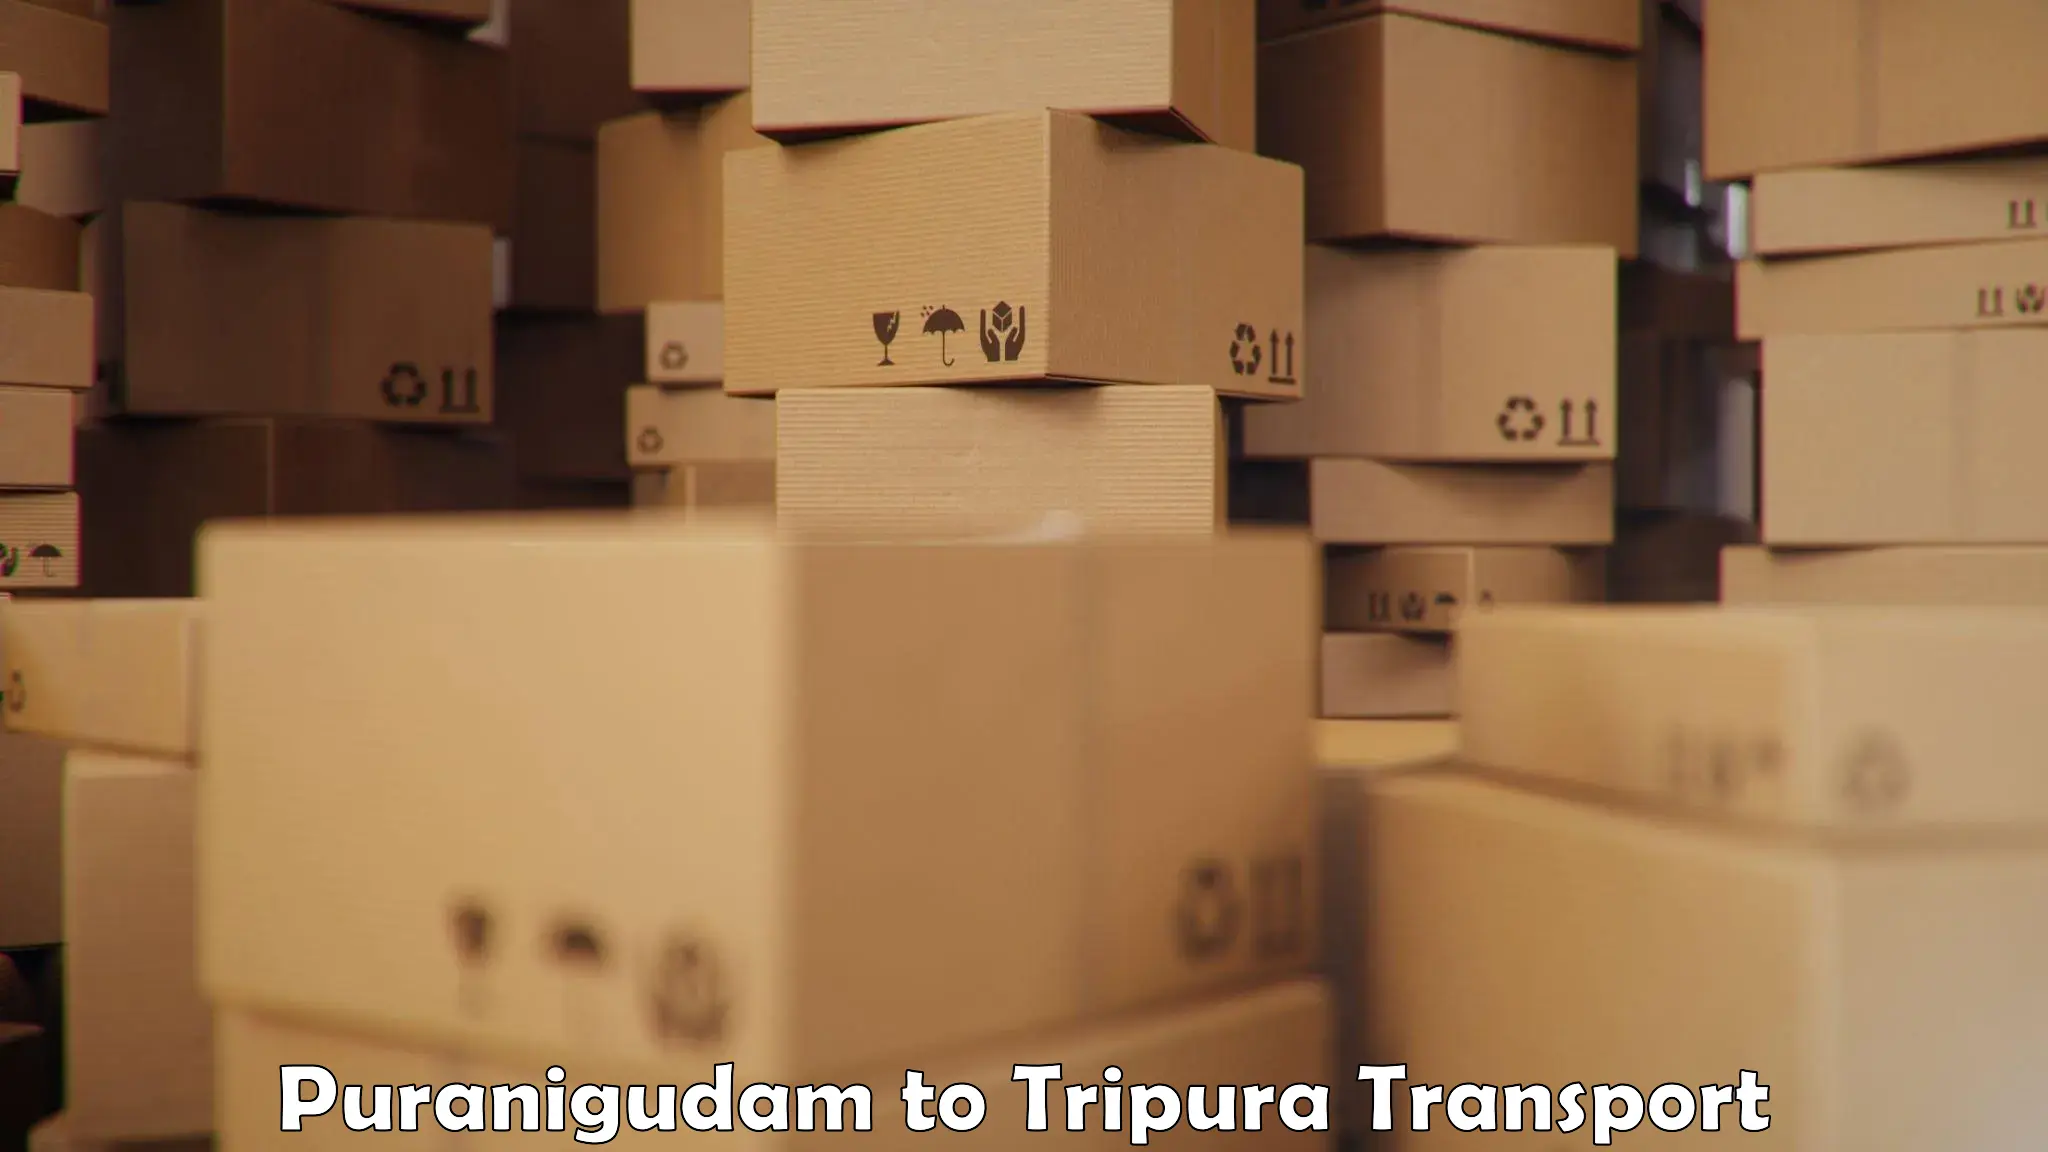 Material transport services Puranigudam to Udaipur Tripura